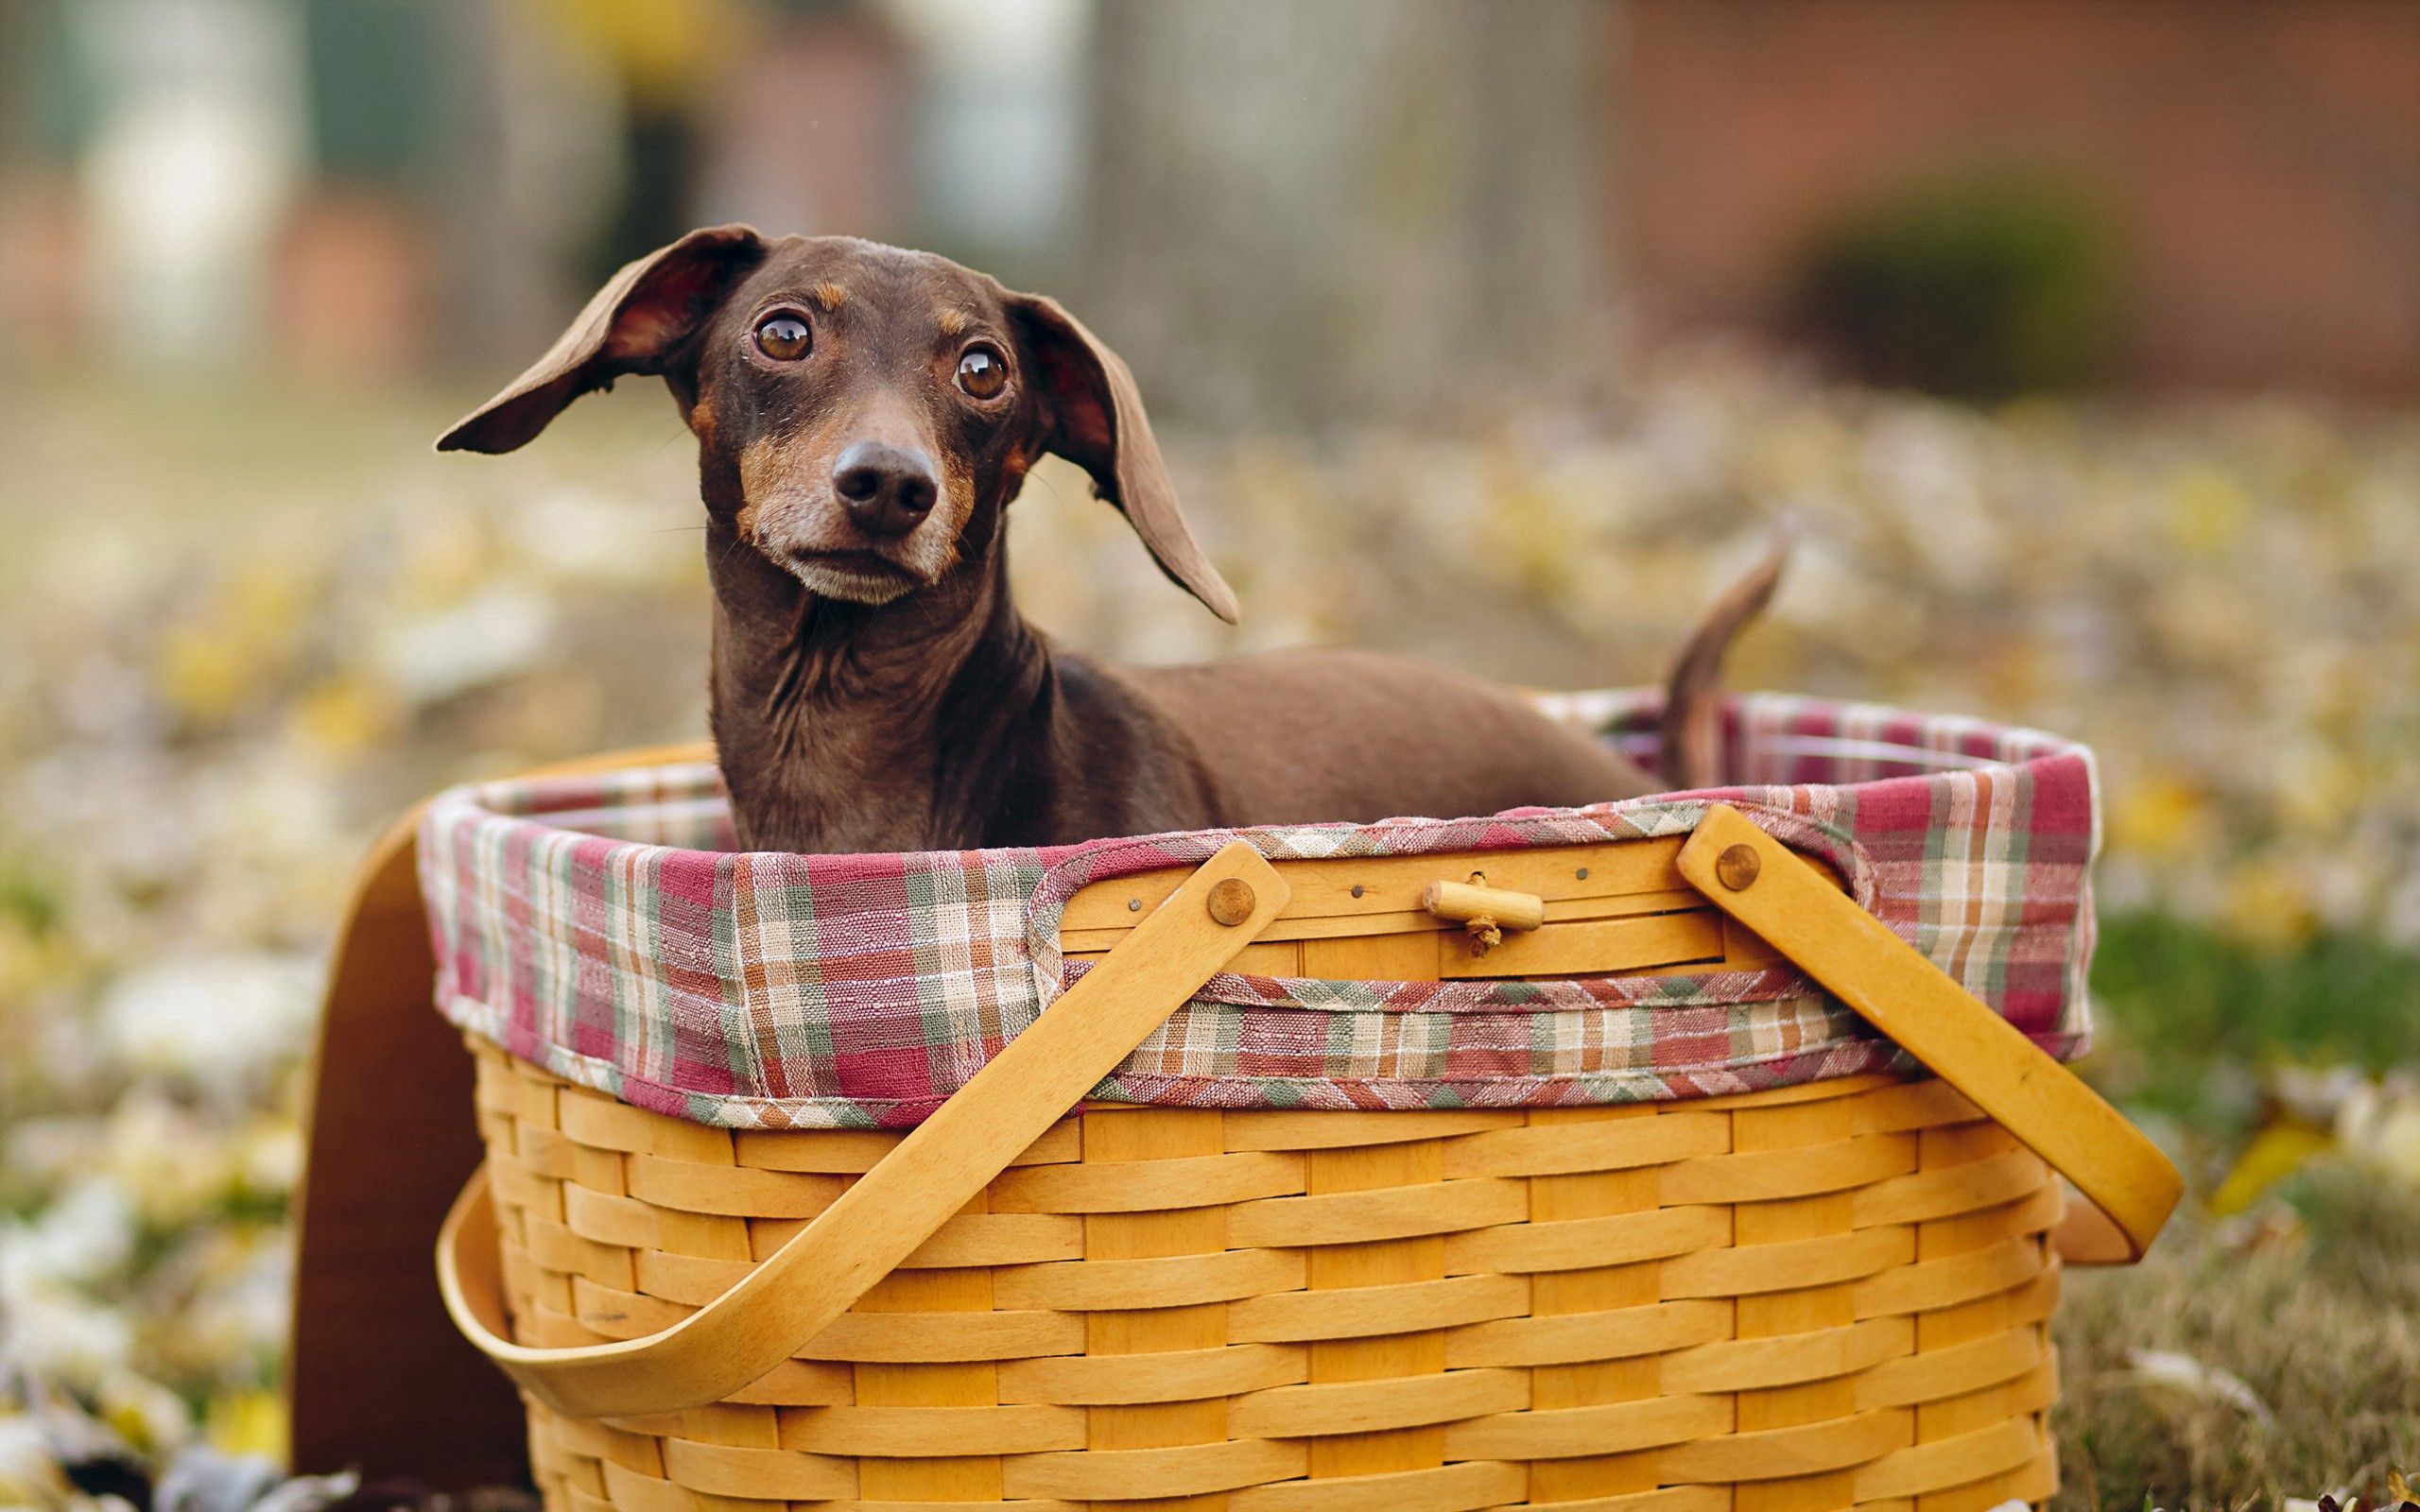 animals, sit, dog, muzzle, basket